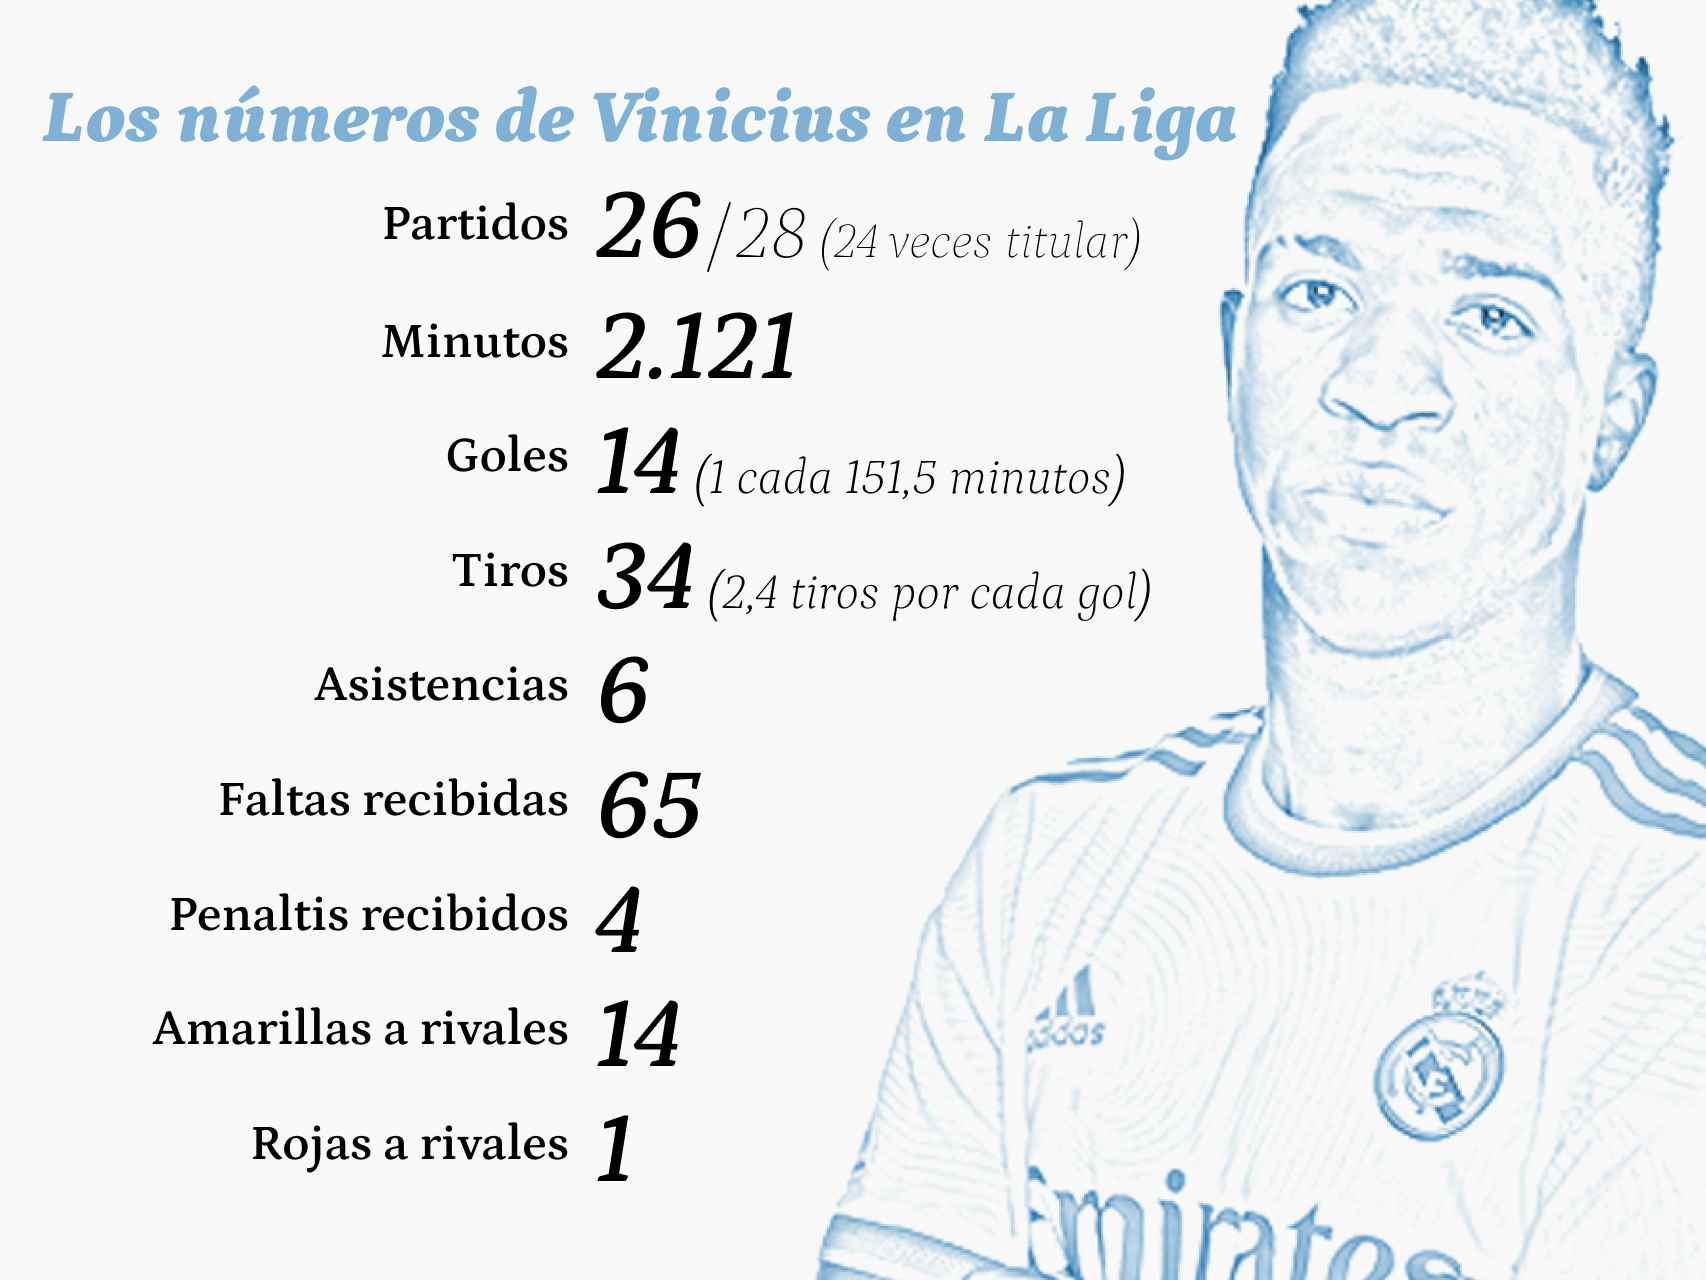 Los números de Vinicius en La Liga 2021/2022